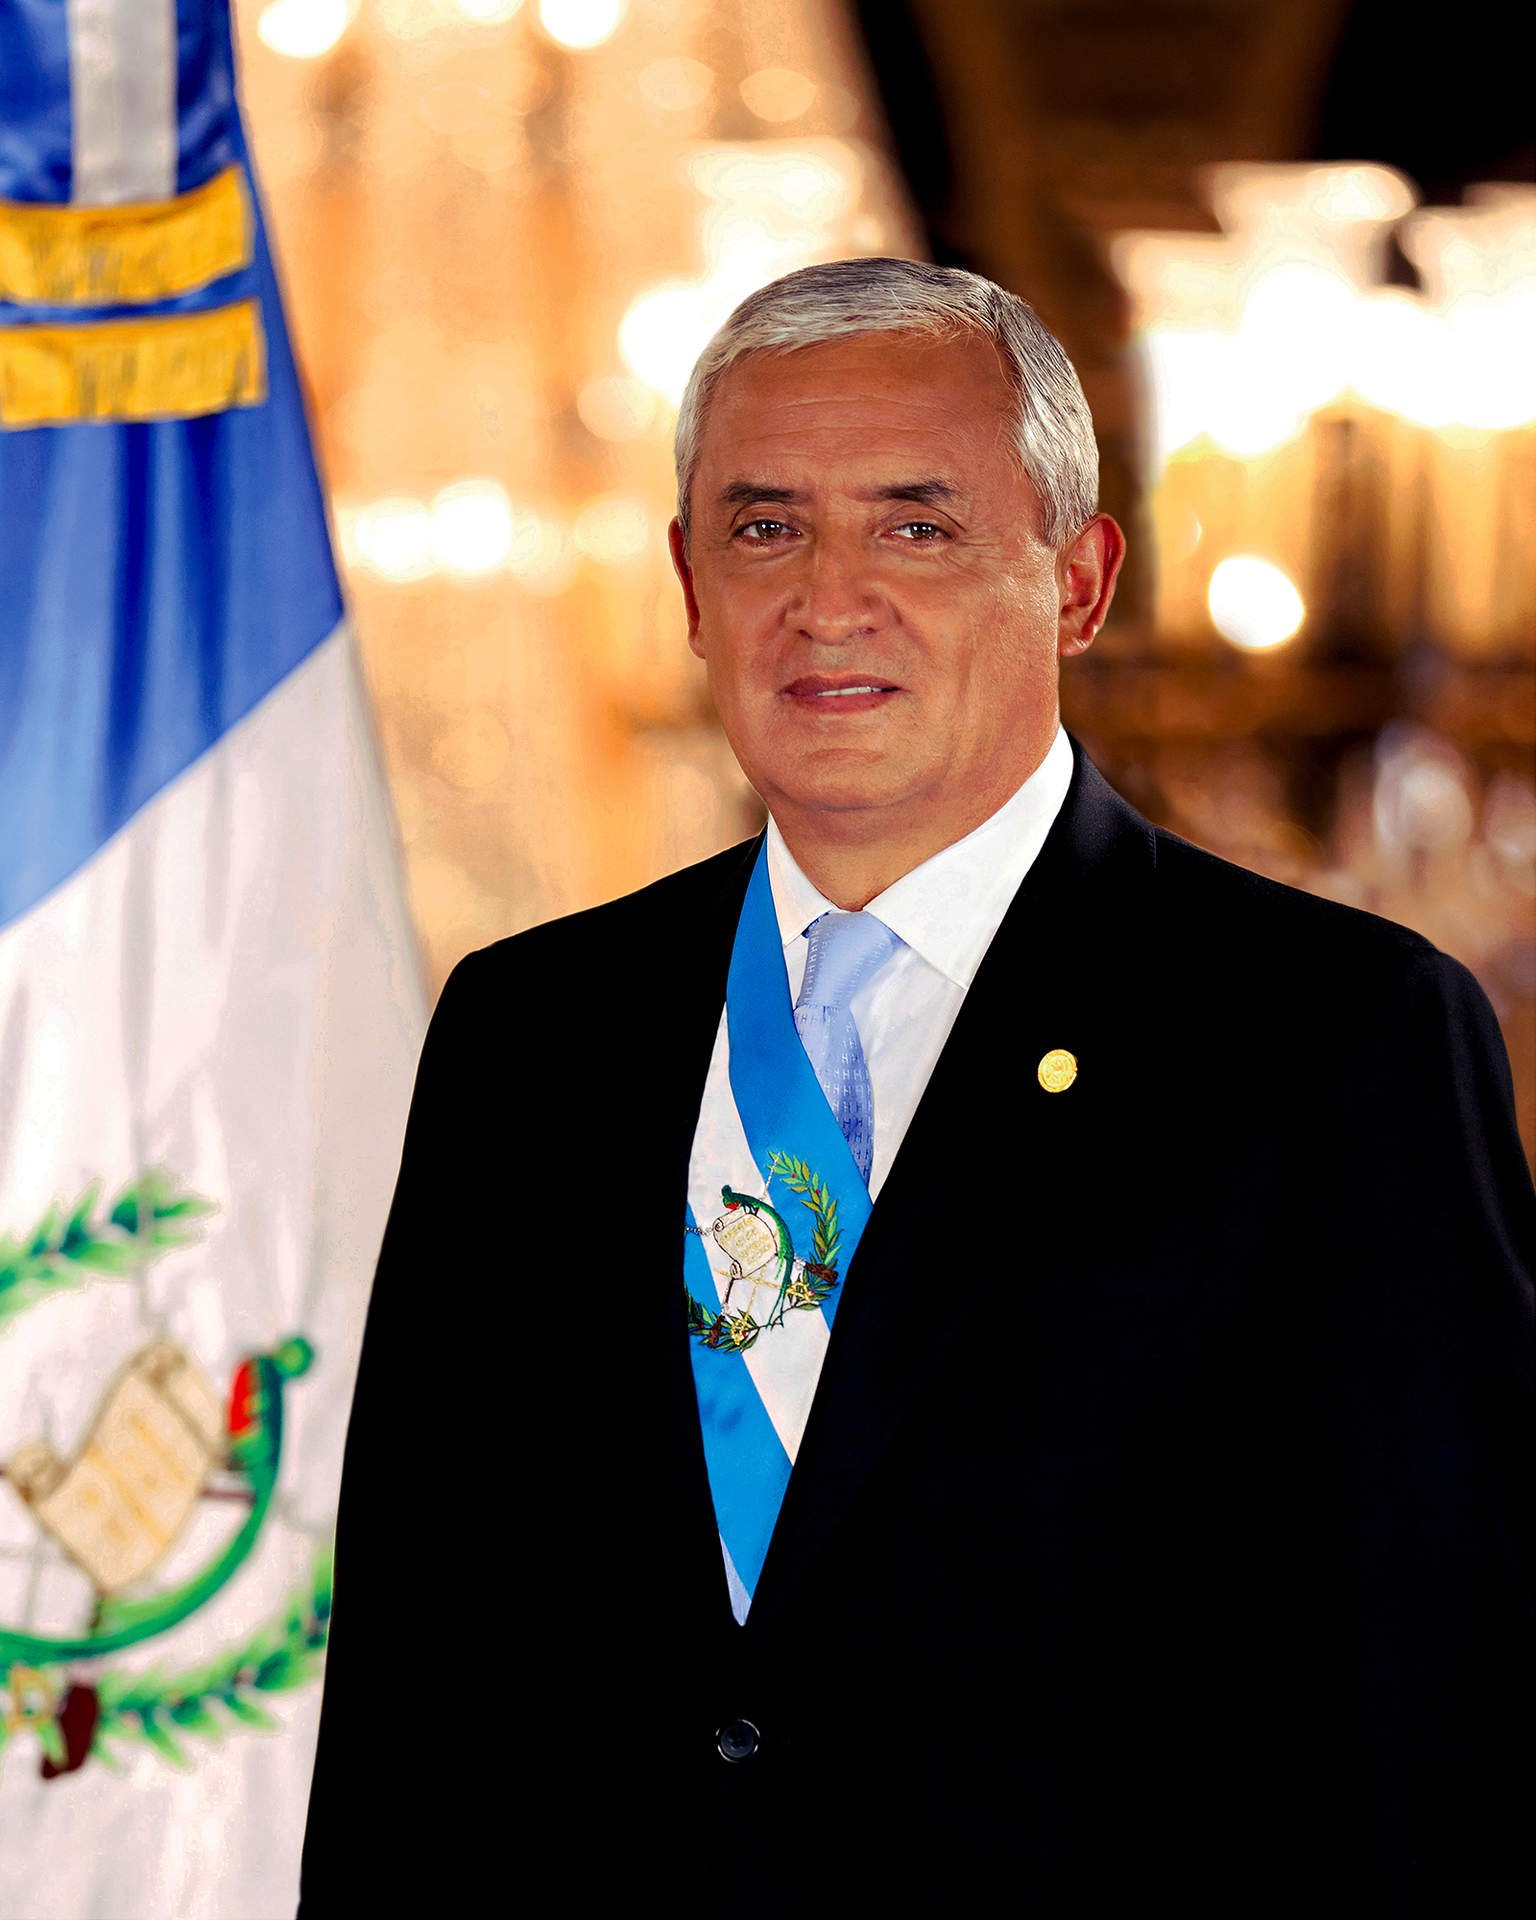 Día de la renuncia de Otto Pérez Molina. Fuente |Wikipedia.